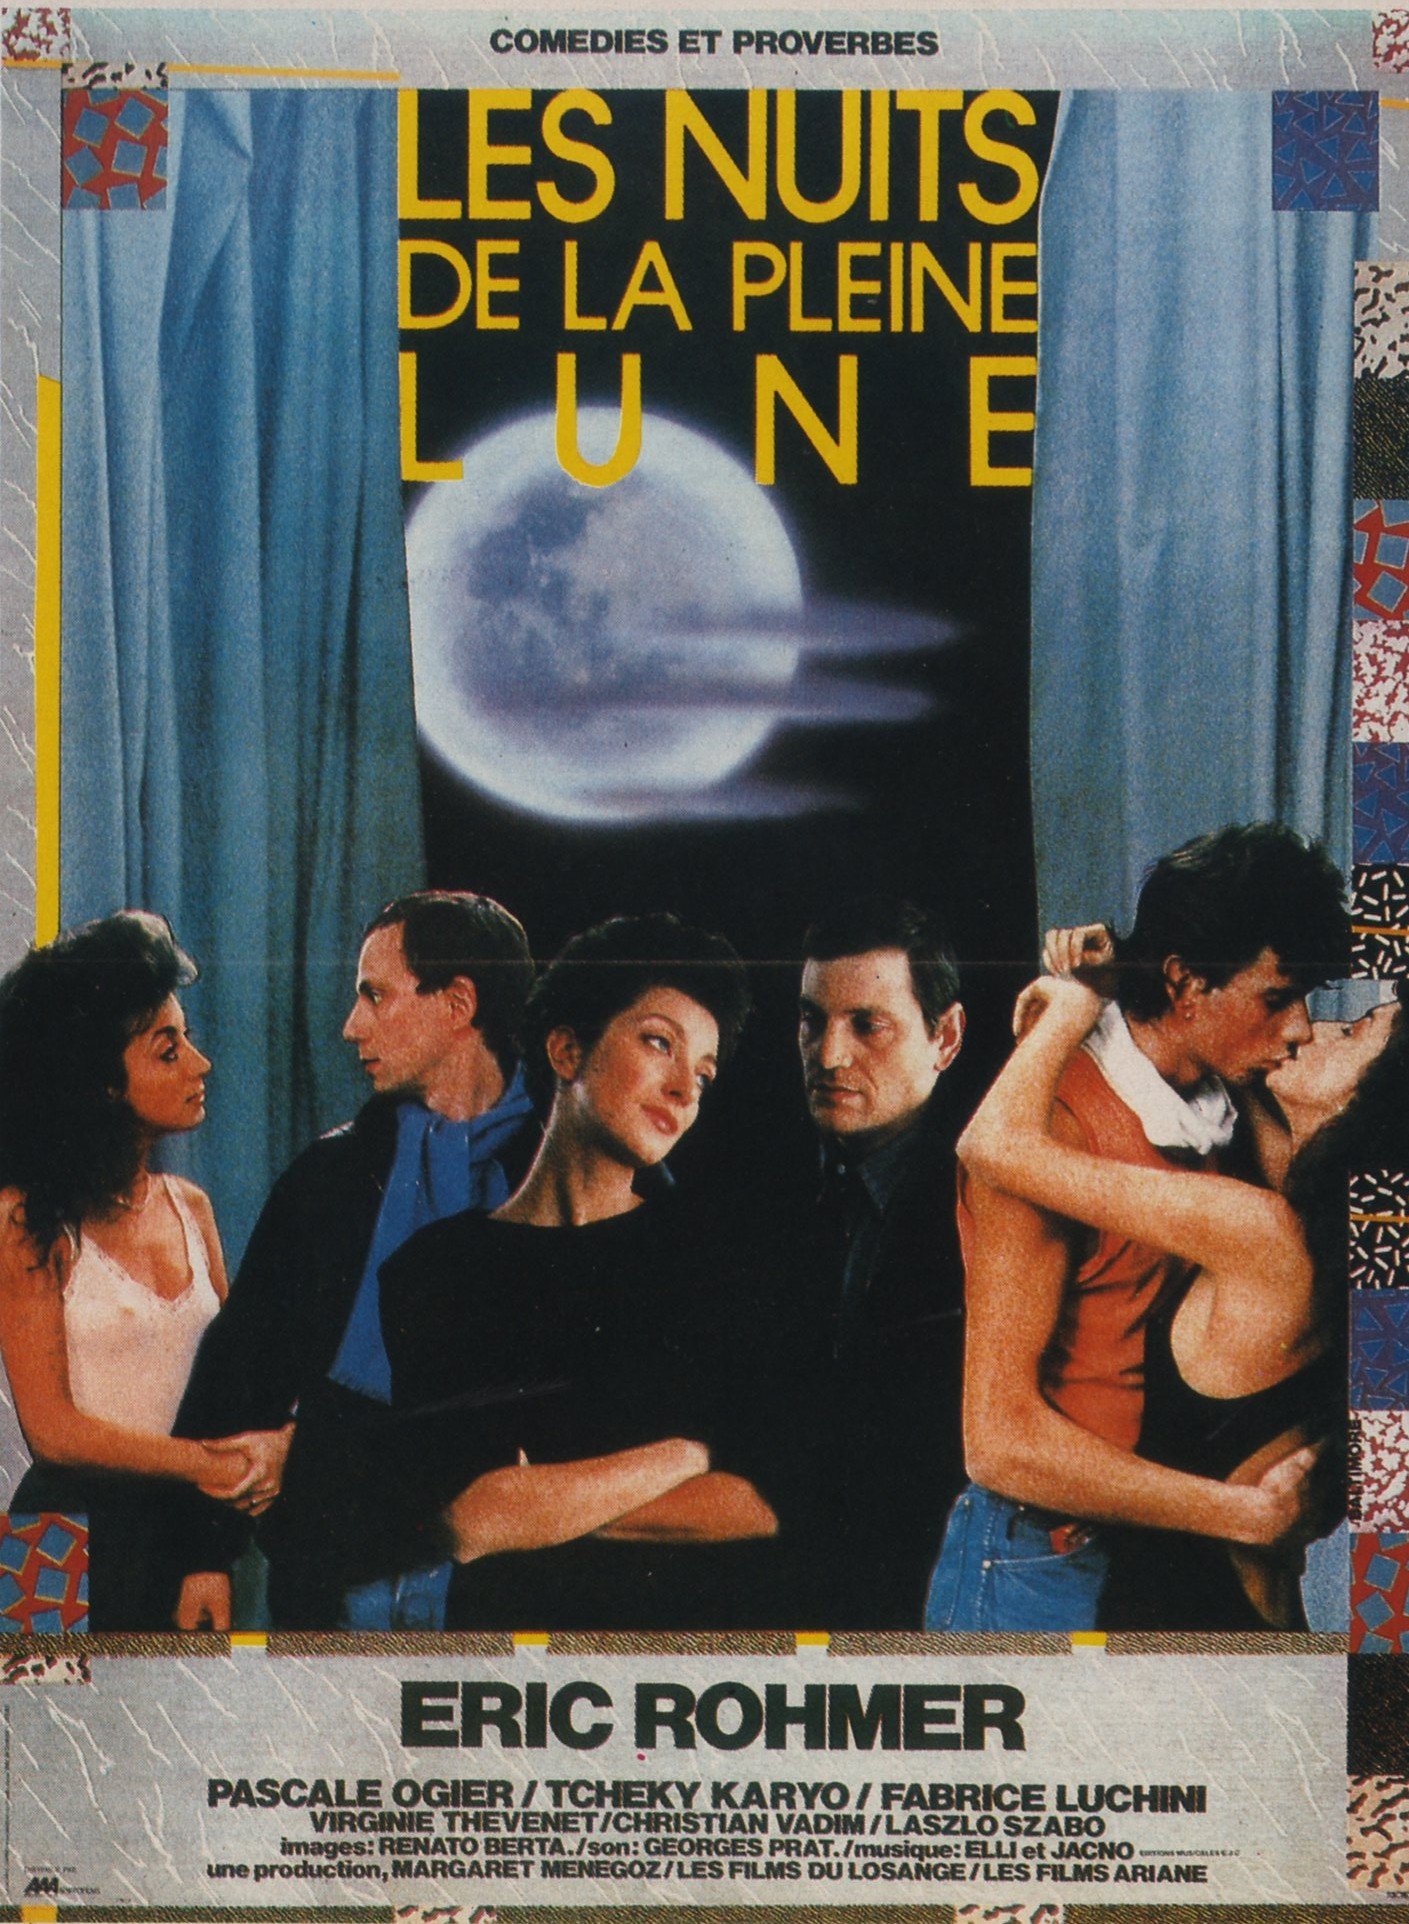 Poster of the movie Les Nuits de la pleine lune